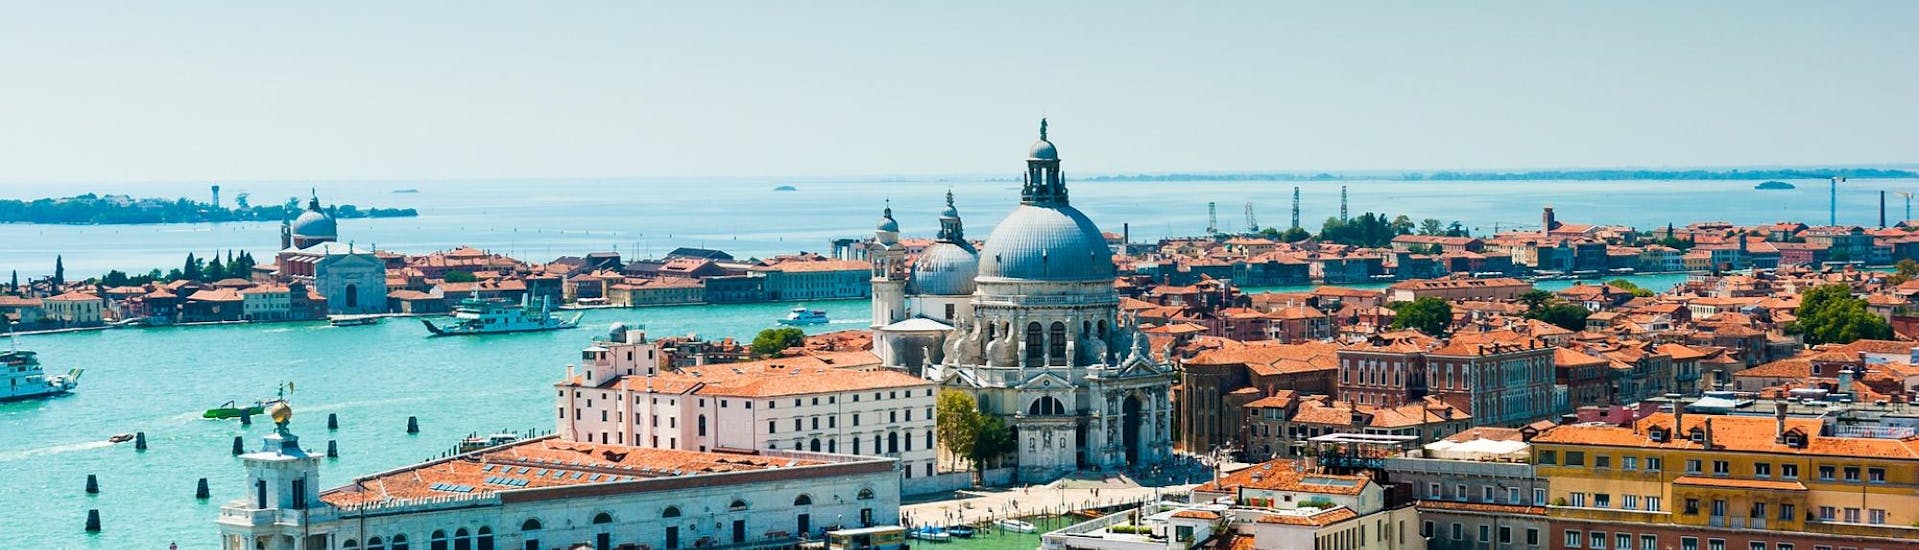 Vista de pájaro de la ciudad de Venecia, que se puede visitar con el traslado en barco a Venecia desde Punta Sabbioni, con Il Doge di Venezia.